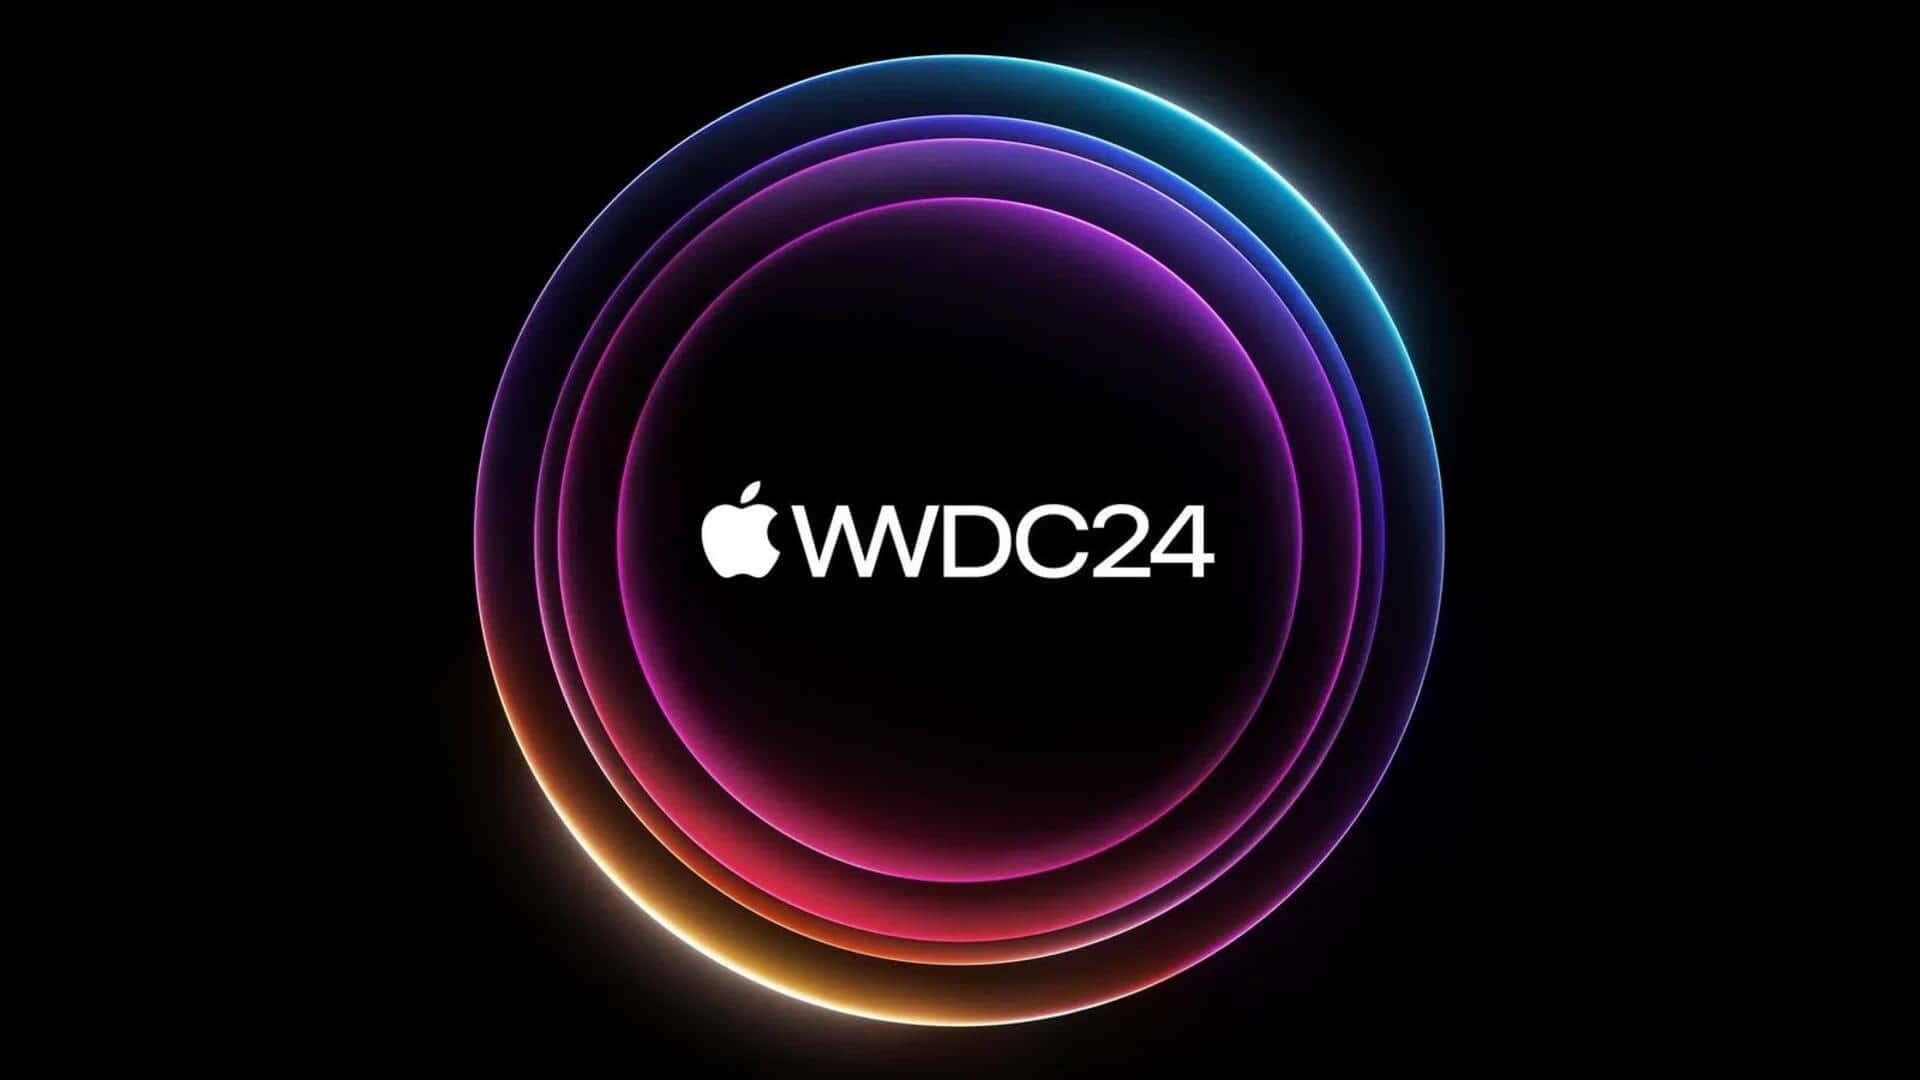 ऐपल आज आयोजित करेगी WWDC 2024, हो सकती हैं ये बड़ी घोषणाएं 